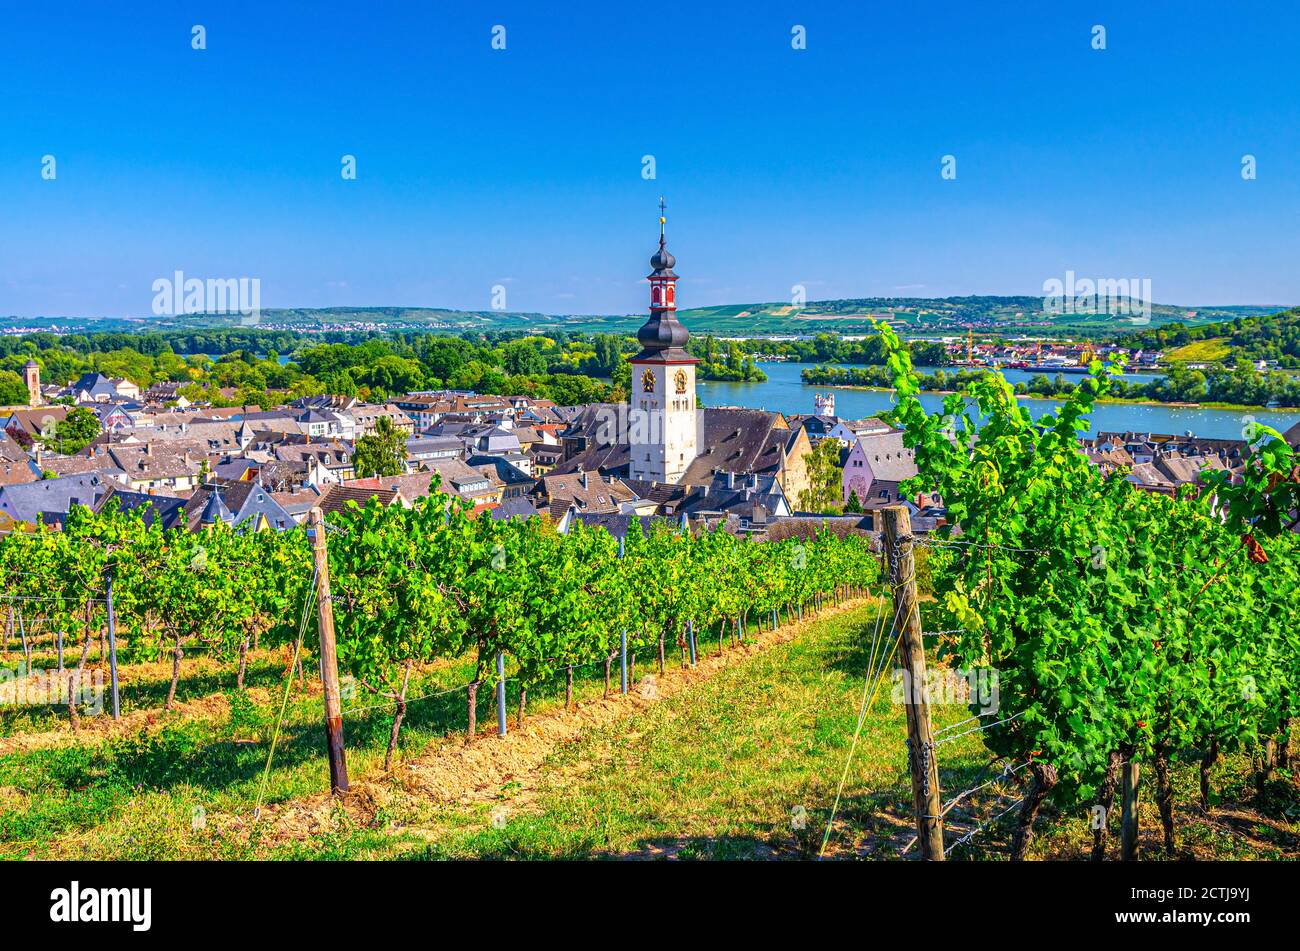 Vista aerea dei vigneti regione vinicola del Rheingau, centro storico di Rudesheim am Rhein con la chiesa di San Jakobus e il fiume Reno, cielo blu sfondo, Renania-Palatinato e stati dell'Assia, Germania Foto Stock